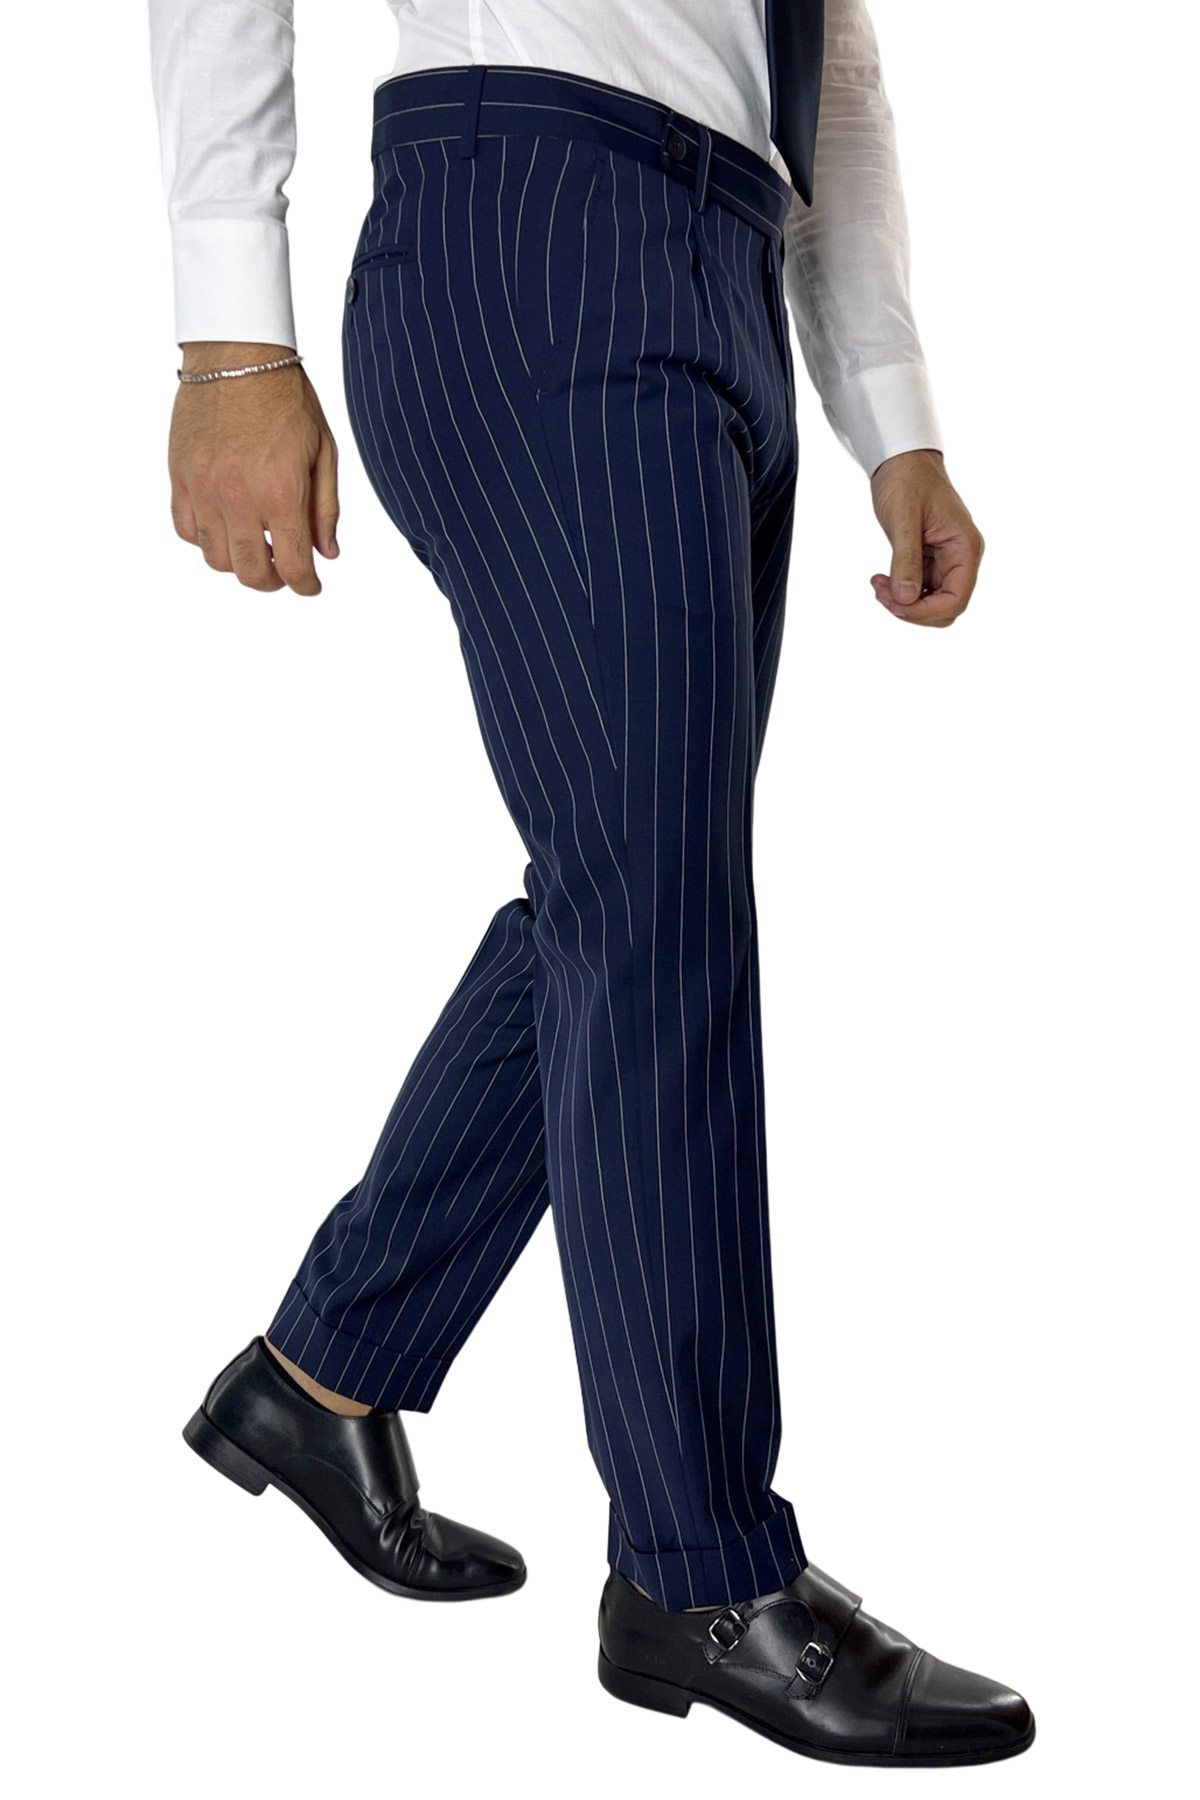 Abito uomo monopetto gessato Navy blu fresco lana mista Rever a lancia 13cm con pantalone una pinces vestibilità slim